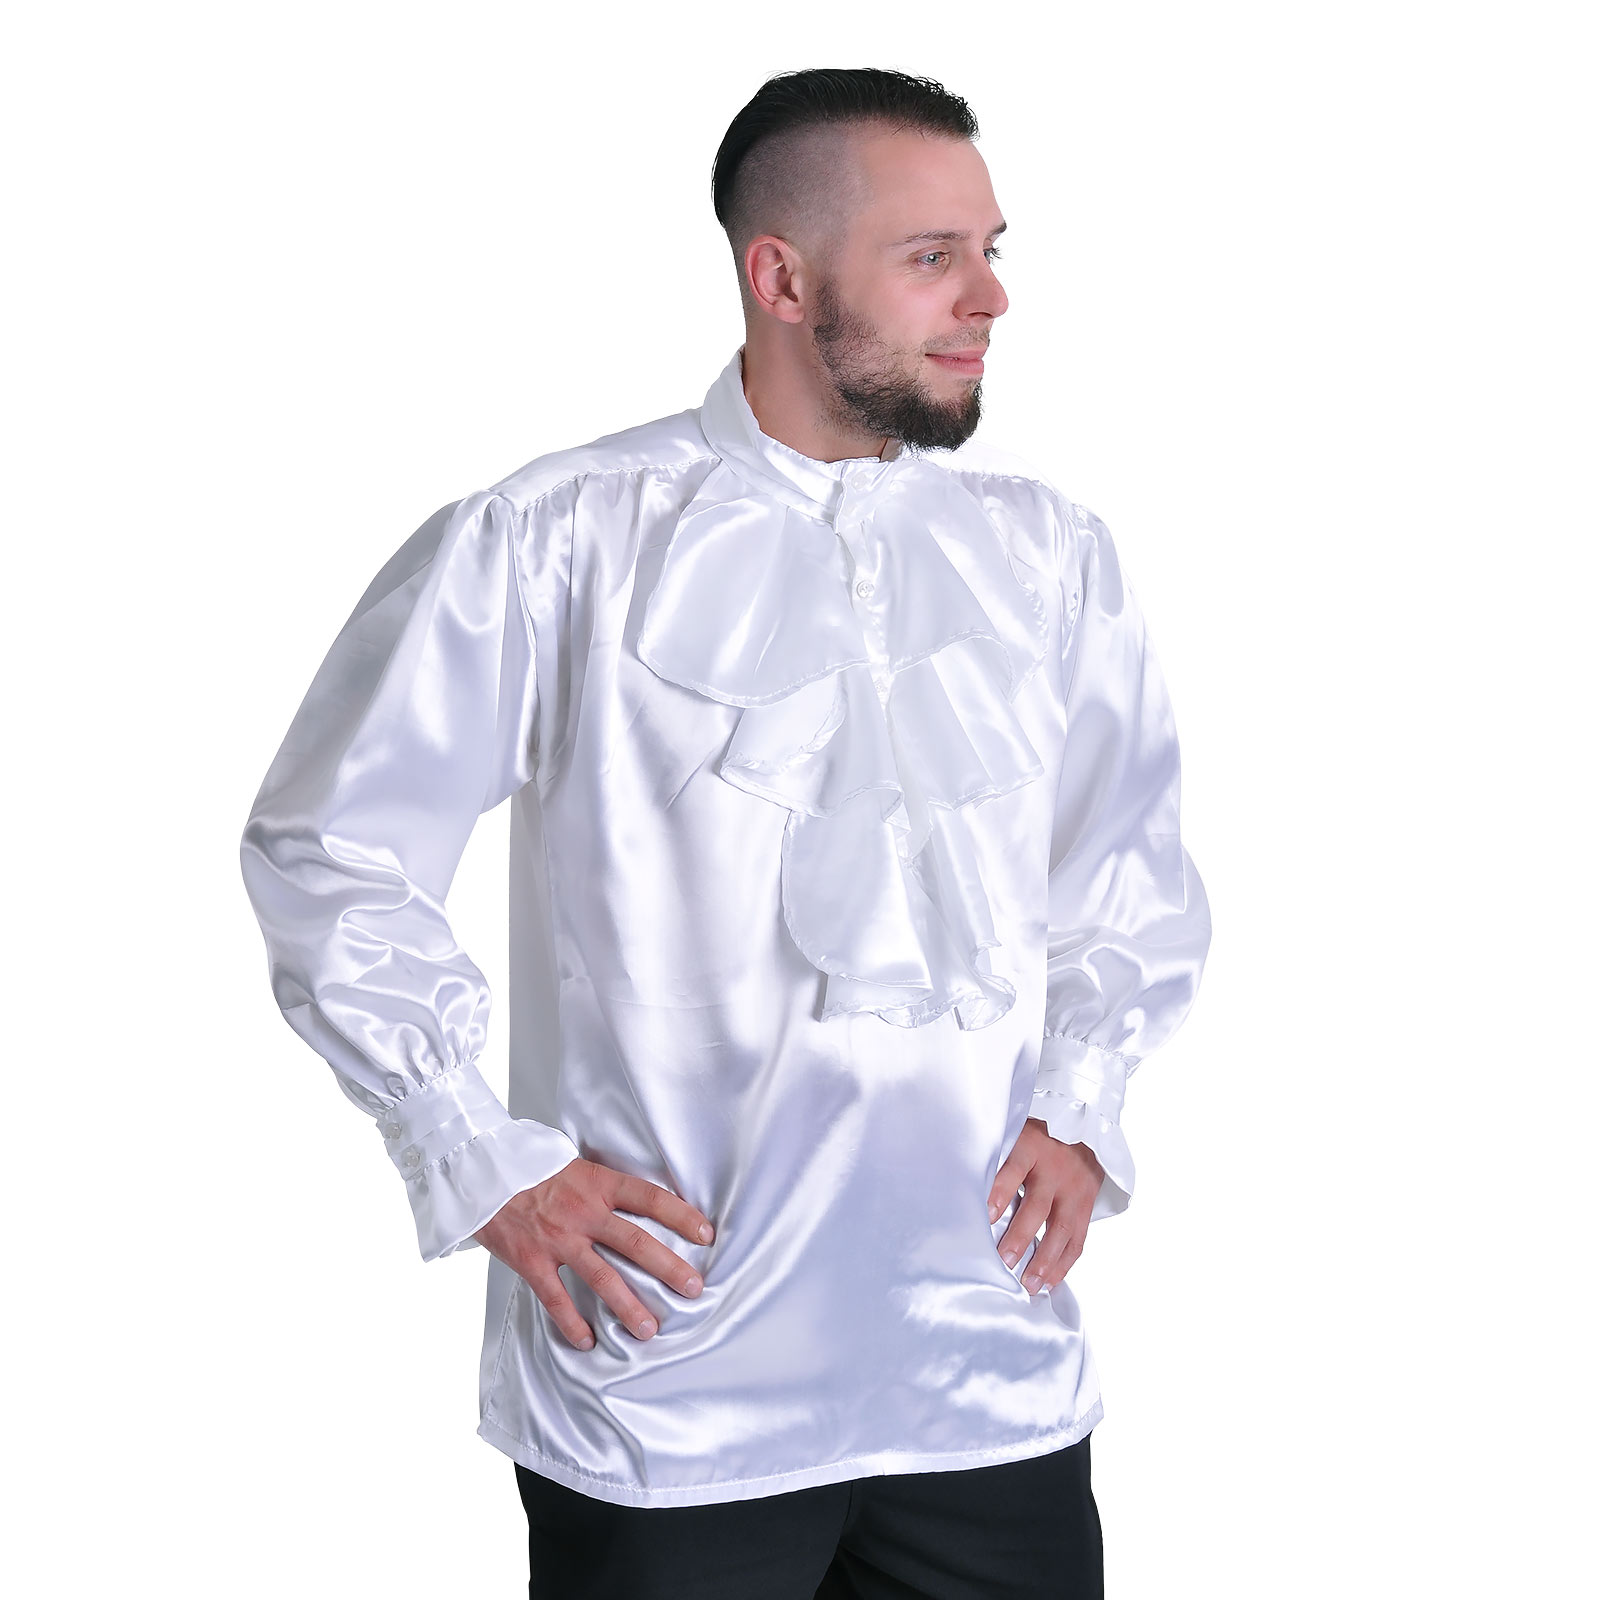 Satin Shirt with Ruffles White